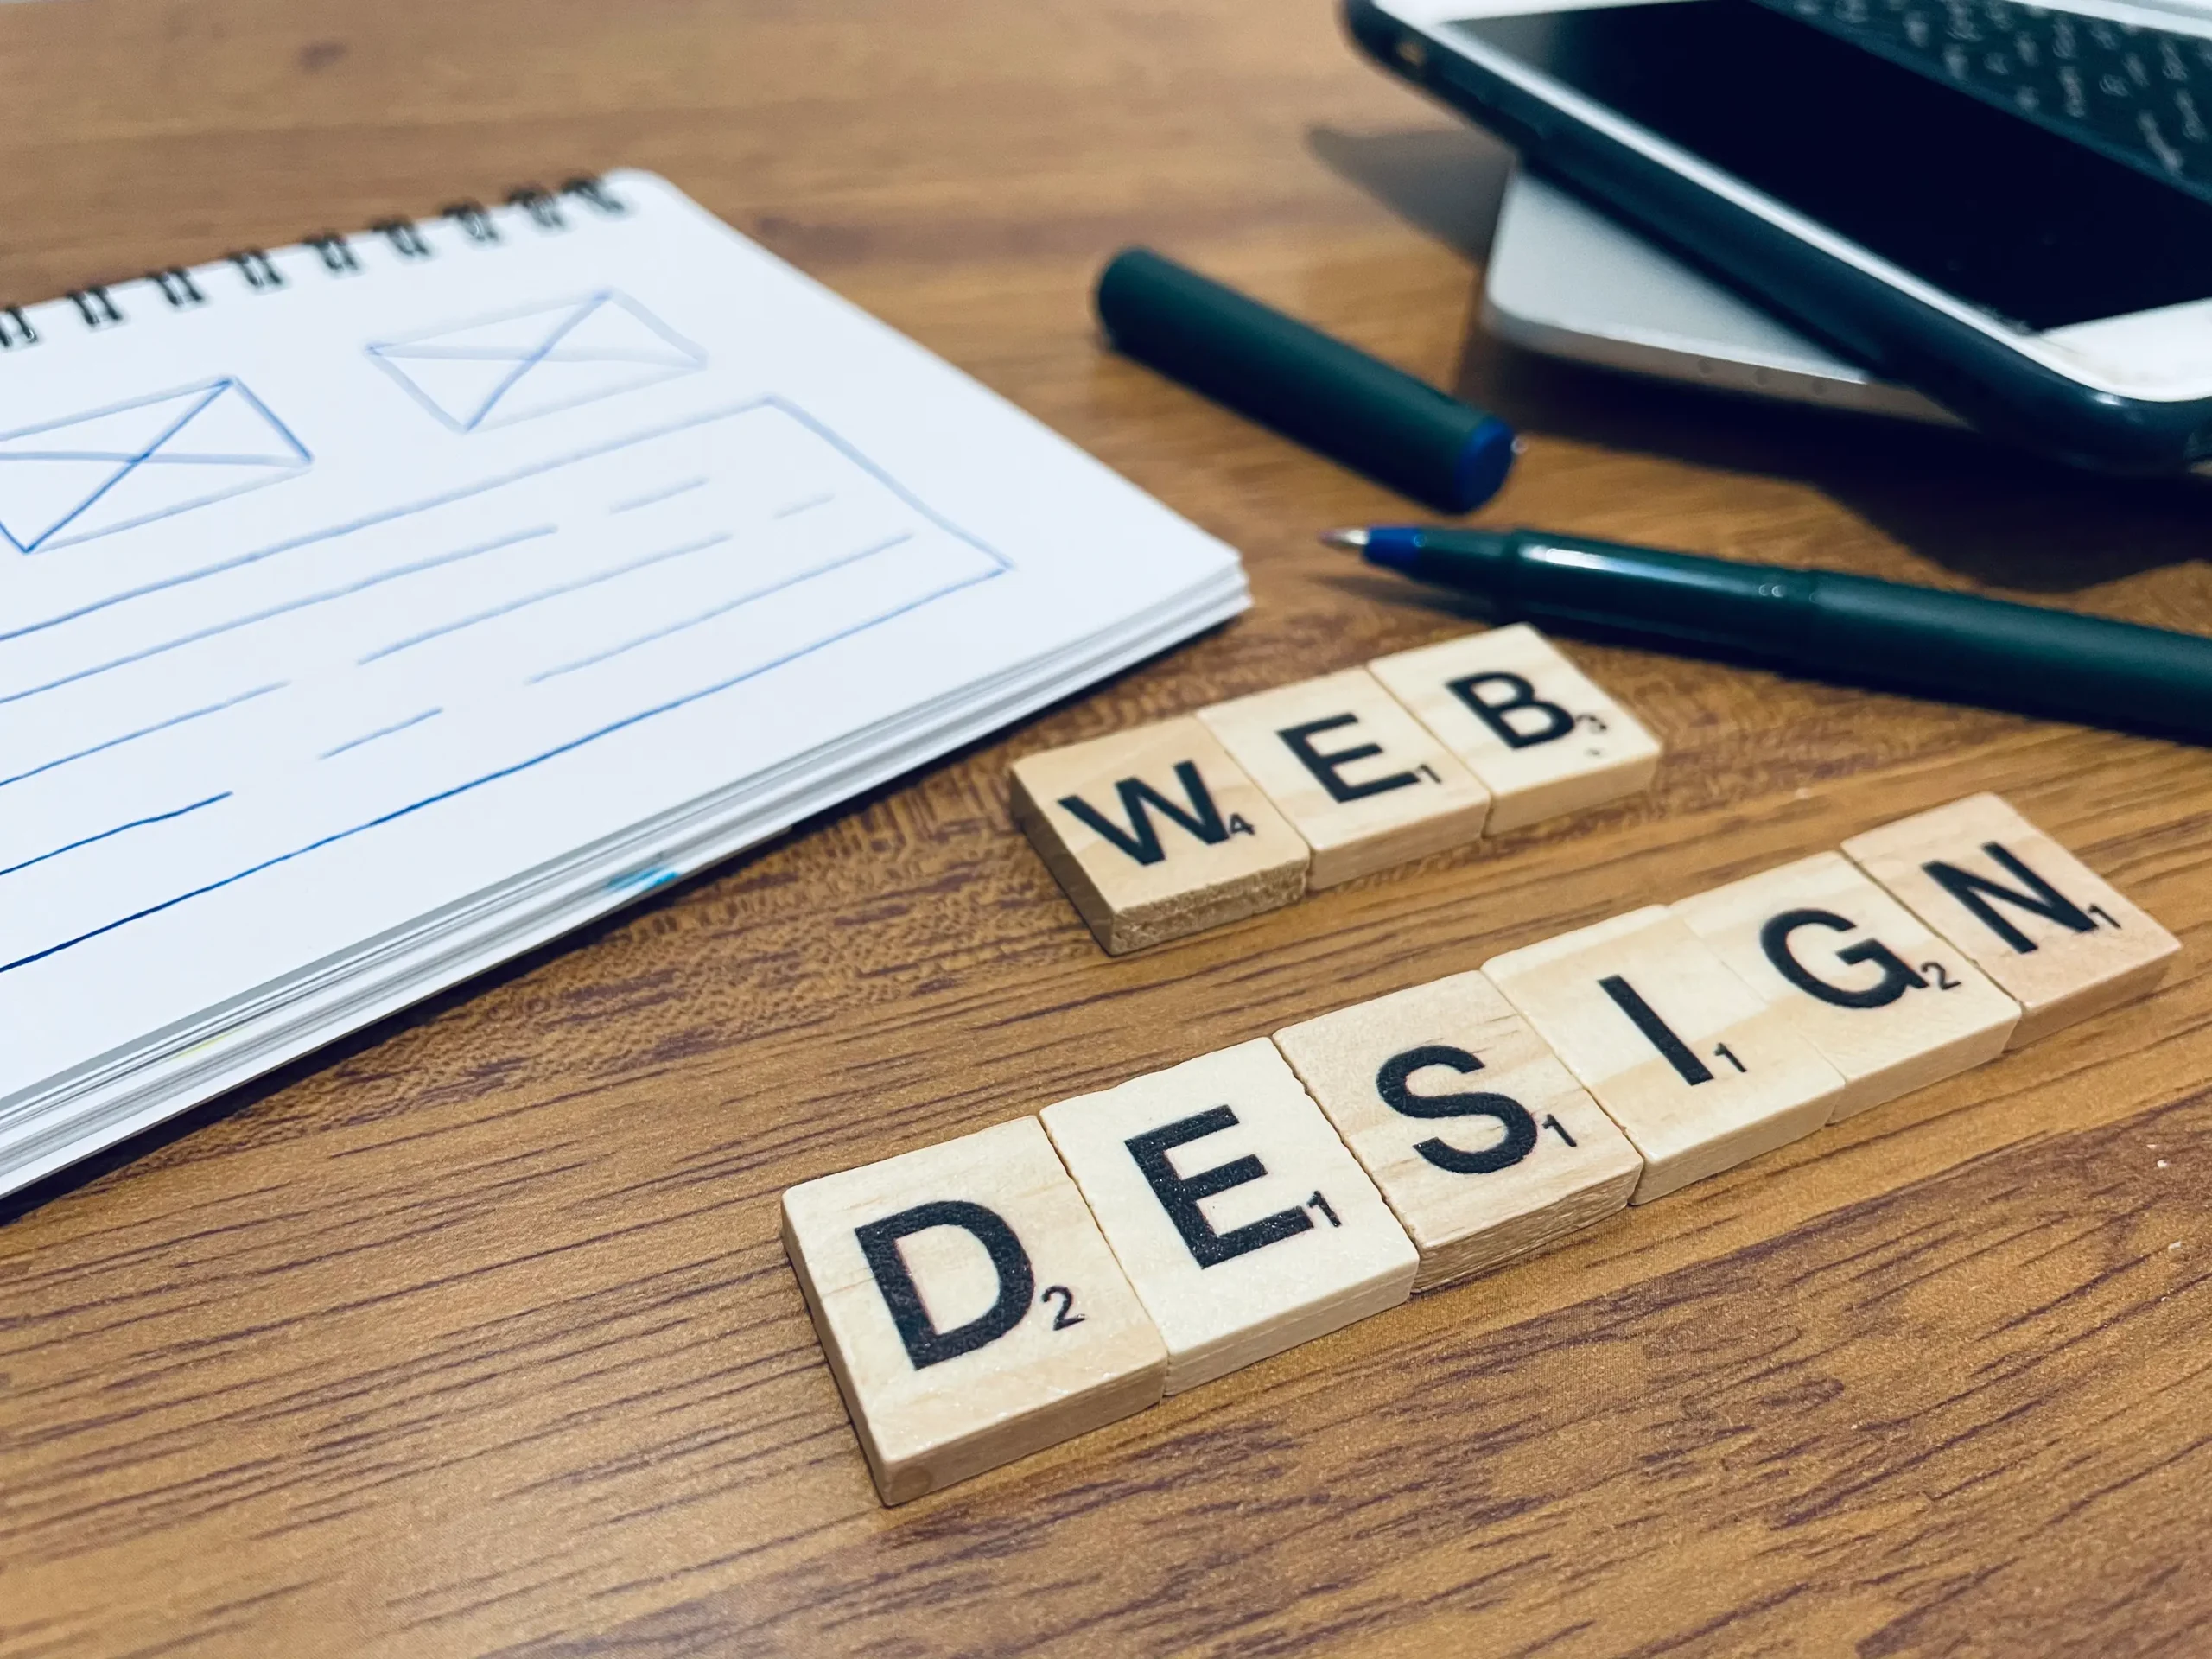 Buchstaben auf Tisch bilden das Wort "Webdesign"